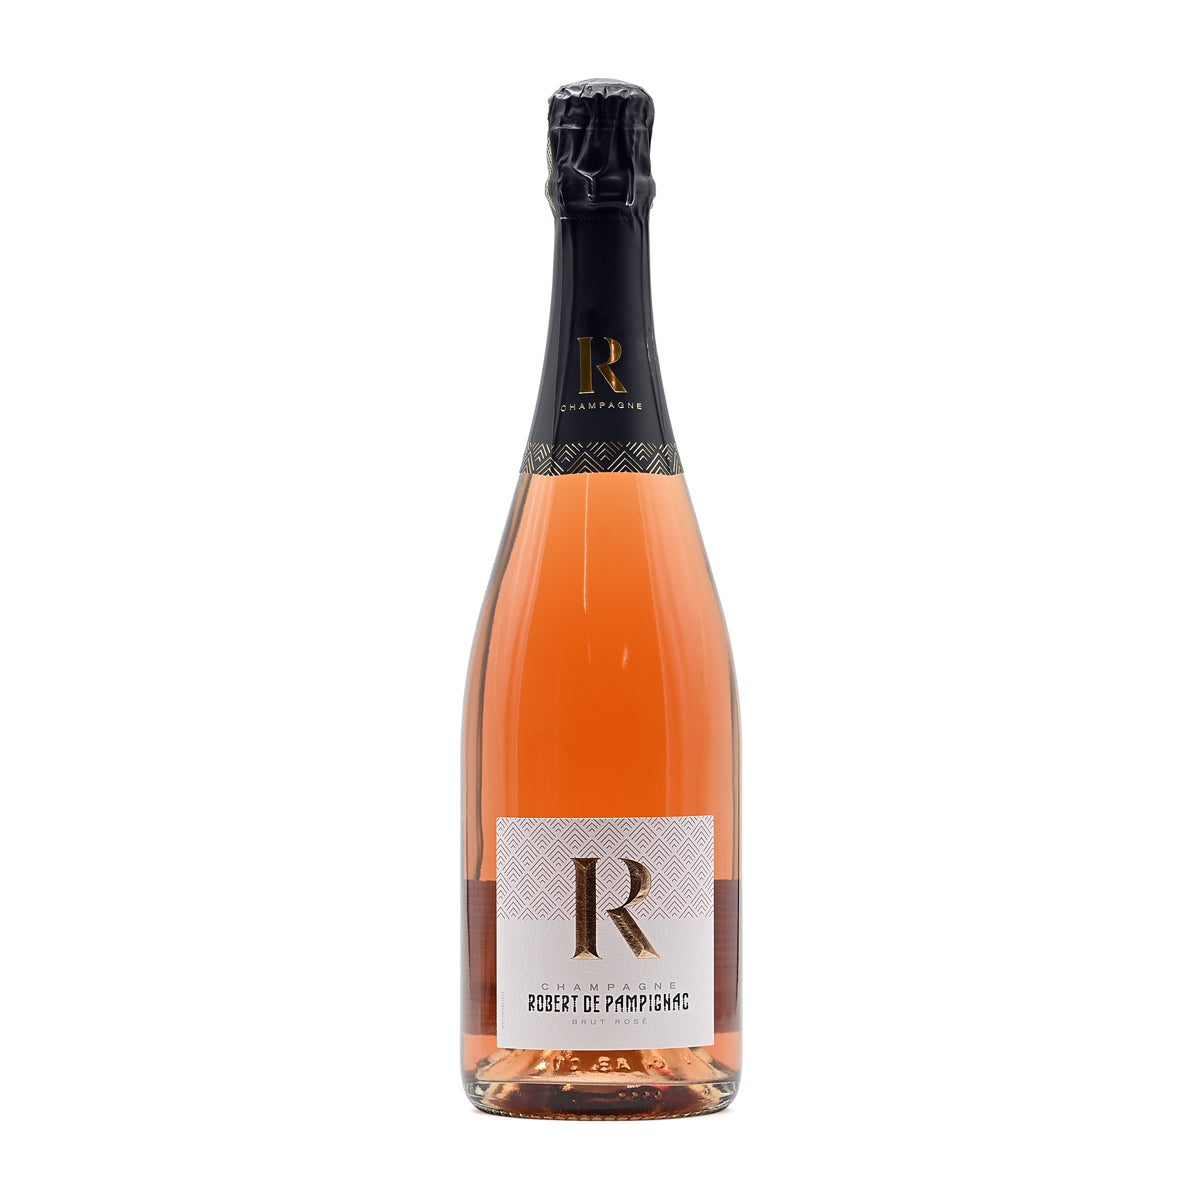 Champagne Robert de Pampignac Brut Rose NV, 750ml French rose champagne brut, from Champagne, France – GDV Fine Wines, Hong Kong